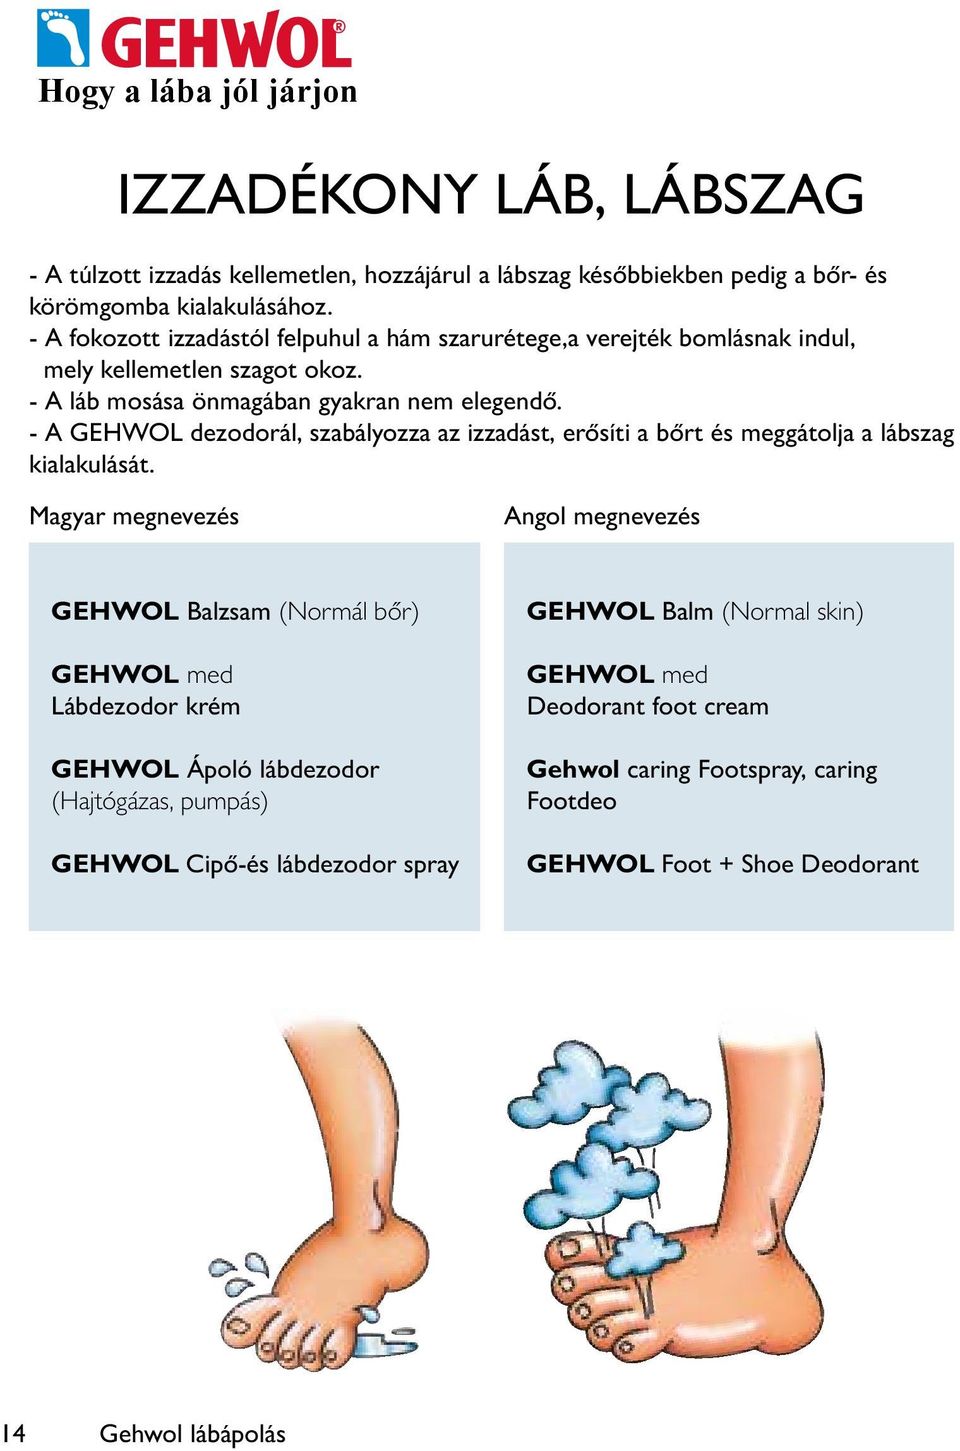 - A GEHWOL dezodorál, szabályozza az izzadást, erősíti a bőrt és meggátolja a lábszag kialakulását.